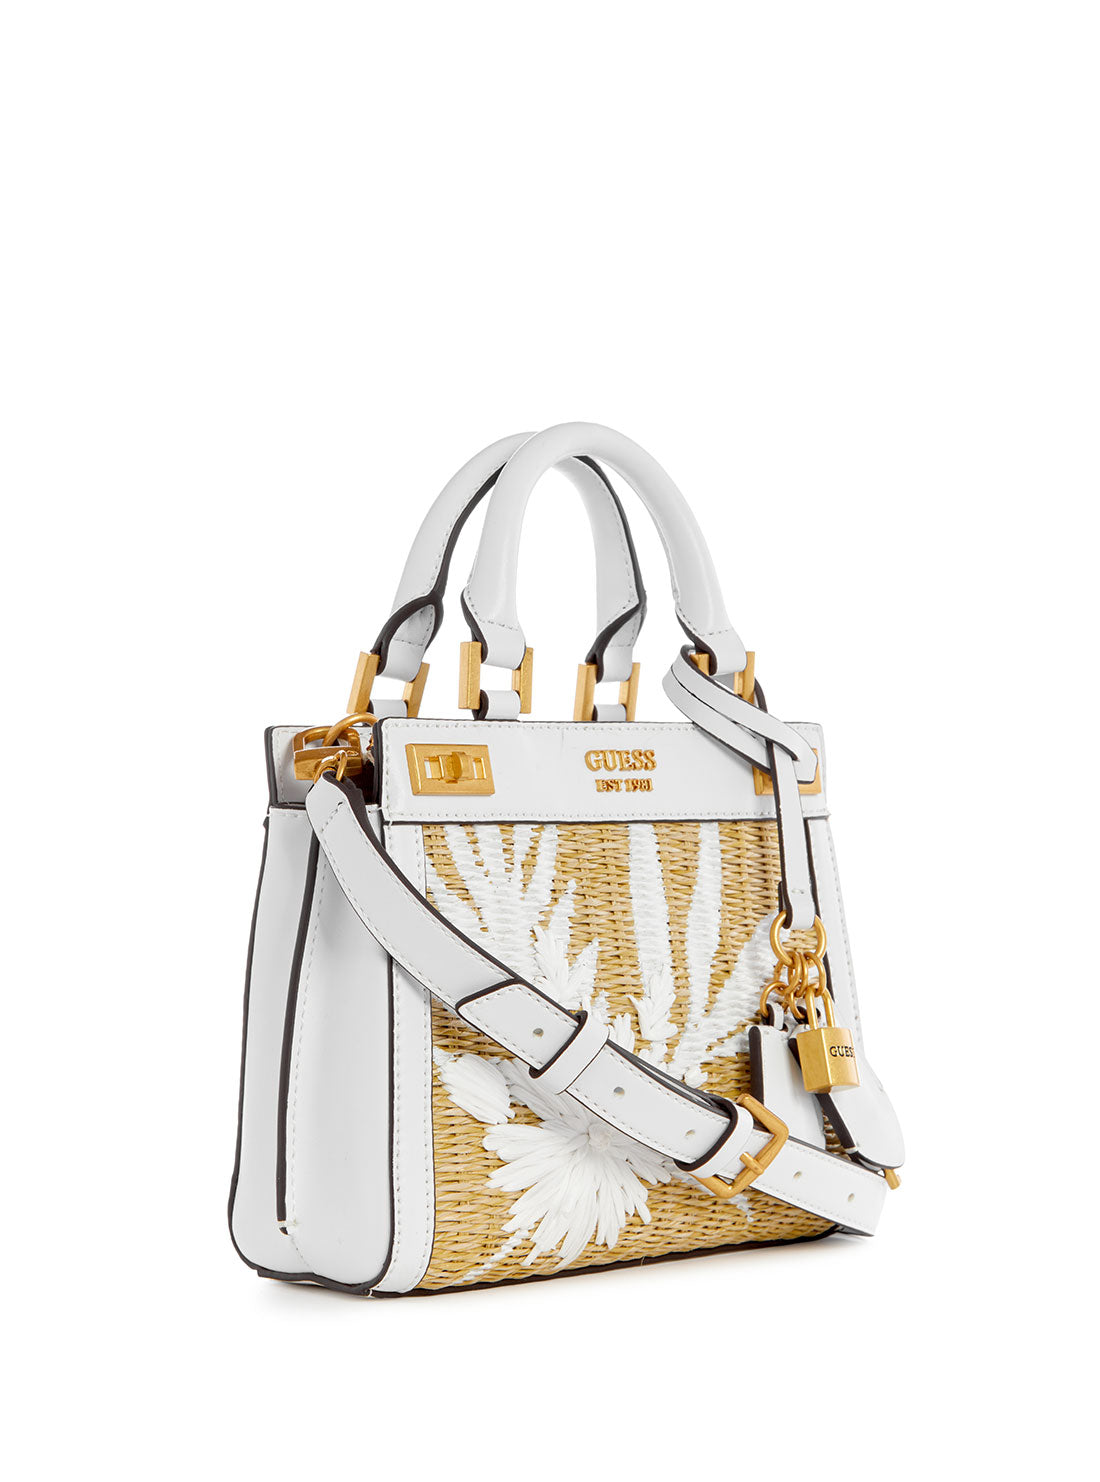 GUESS Women's White Floral Katey Mini Satchel Bag WA787073 Front Side View